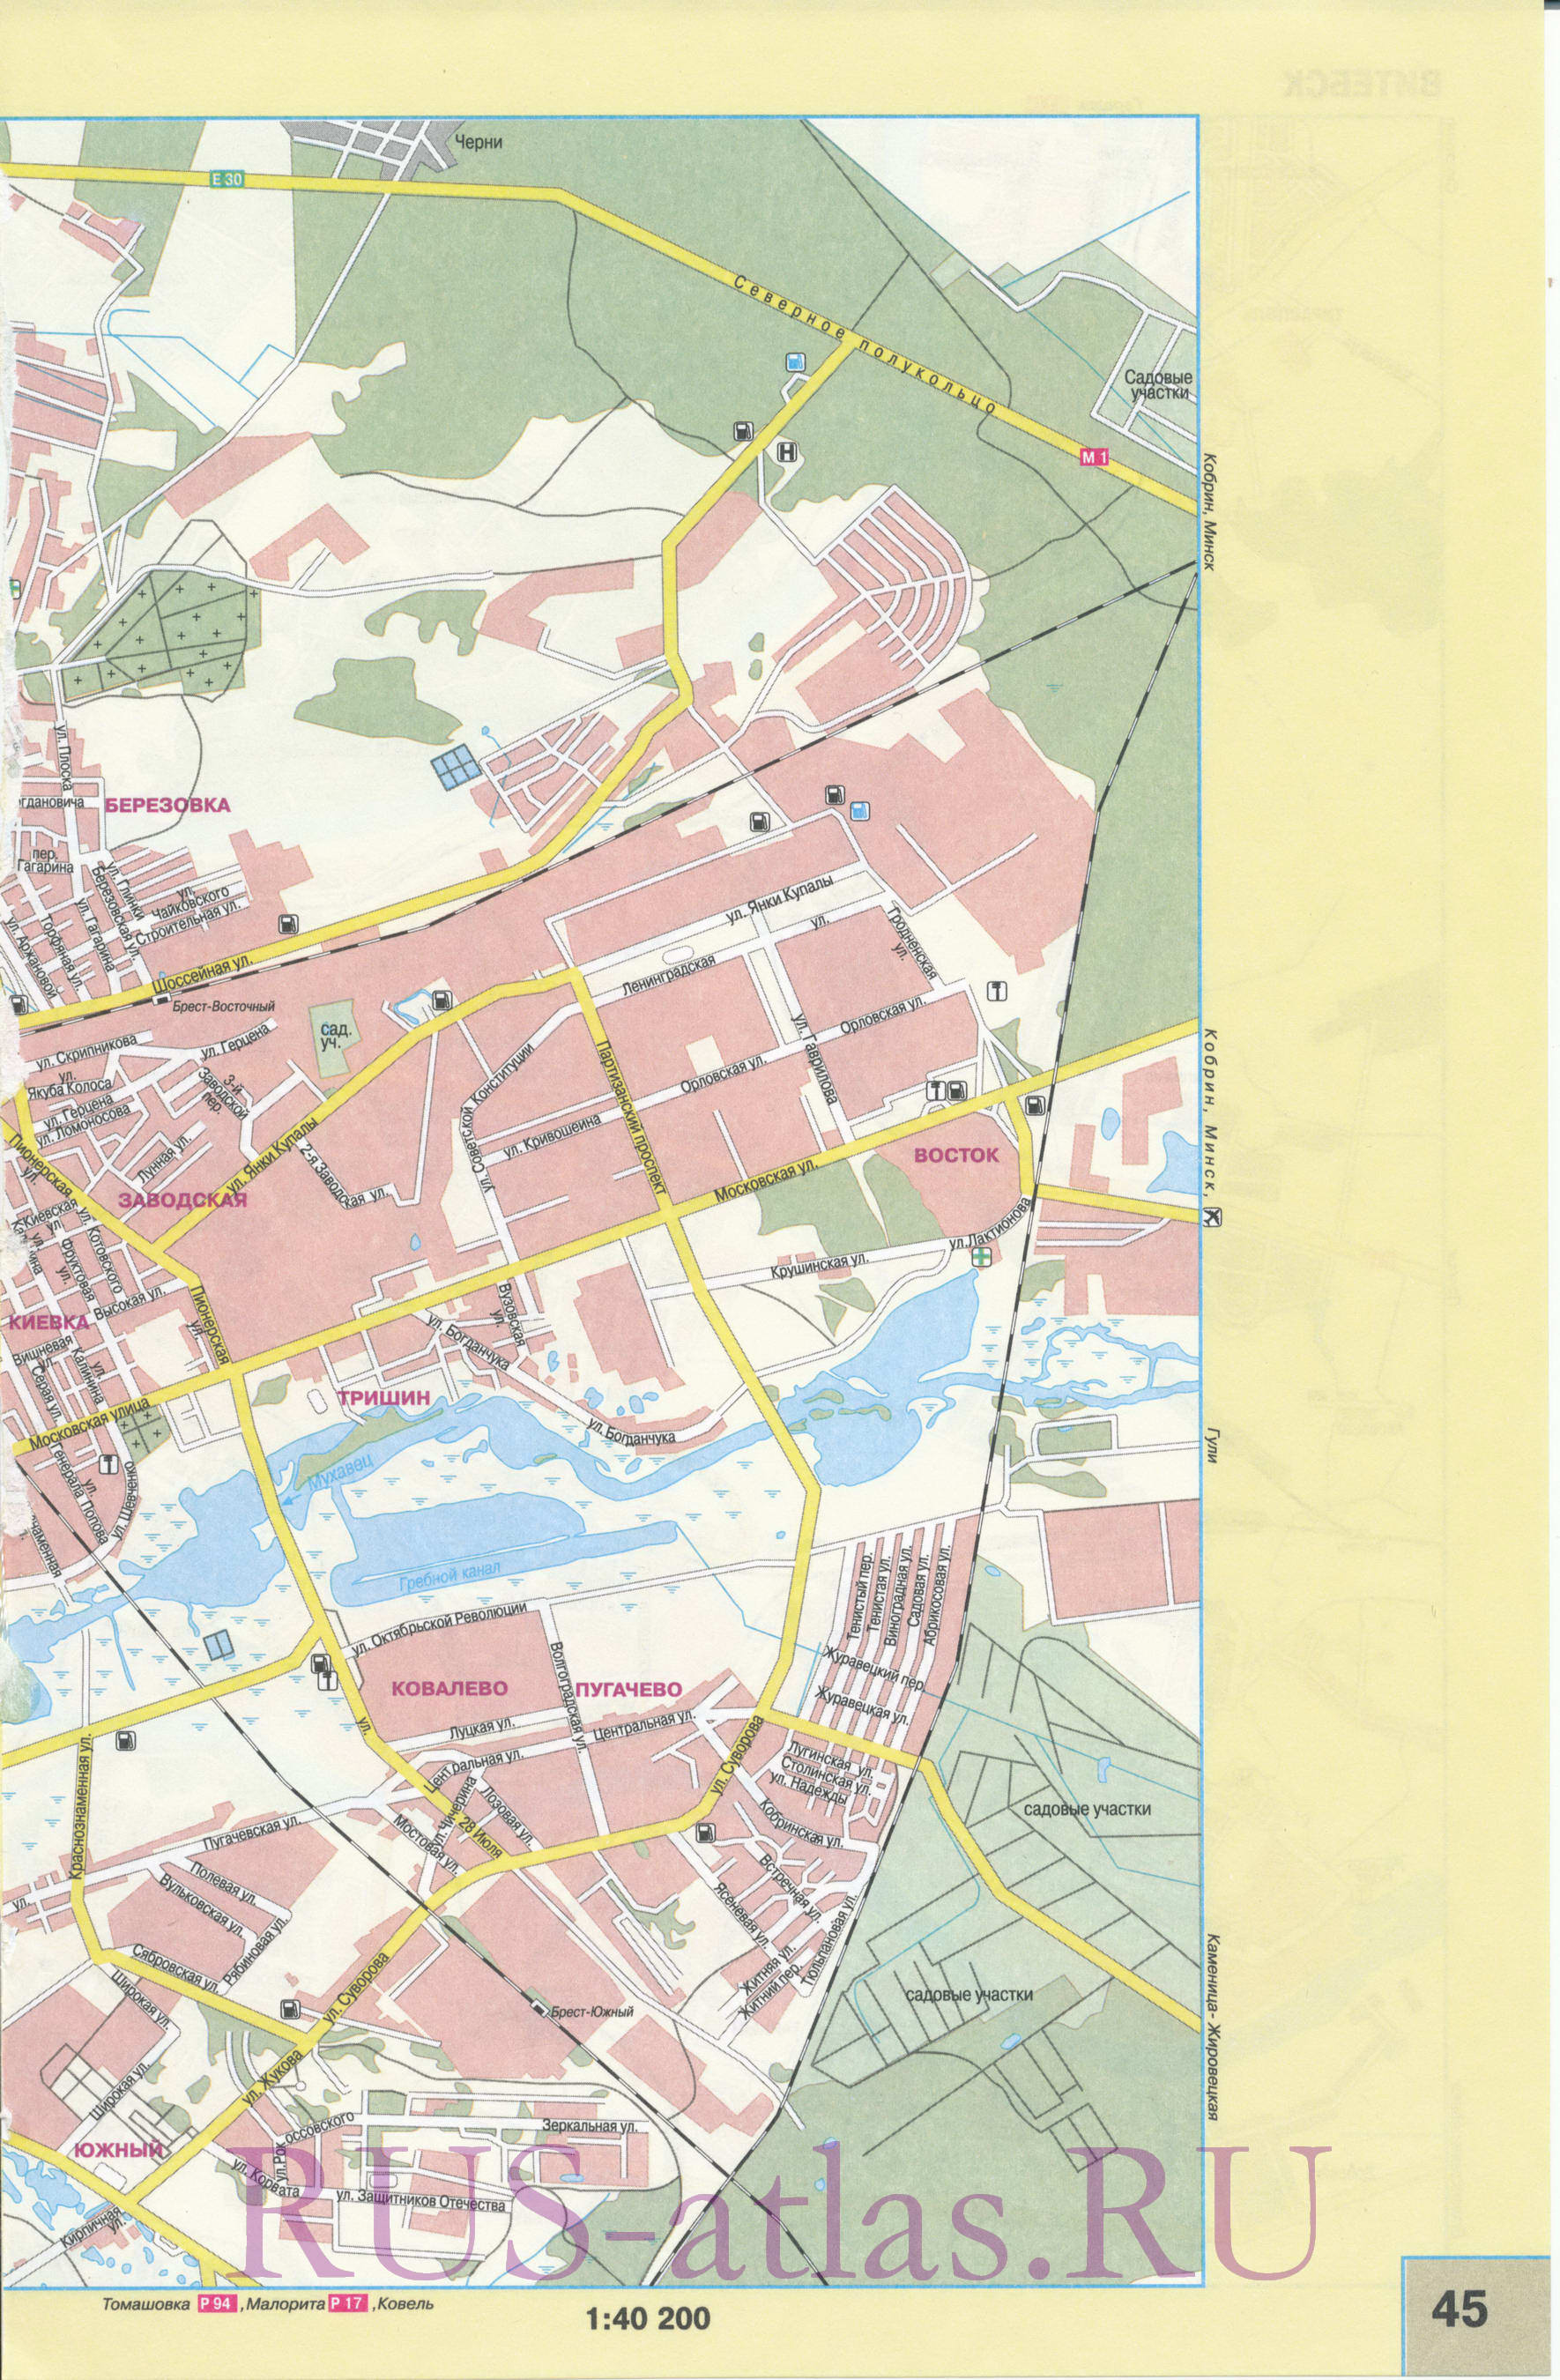 Карта Бреста. Детальная крупномасштабная карта города Брест с названиями улиц и достопримечательностями, B0 - 